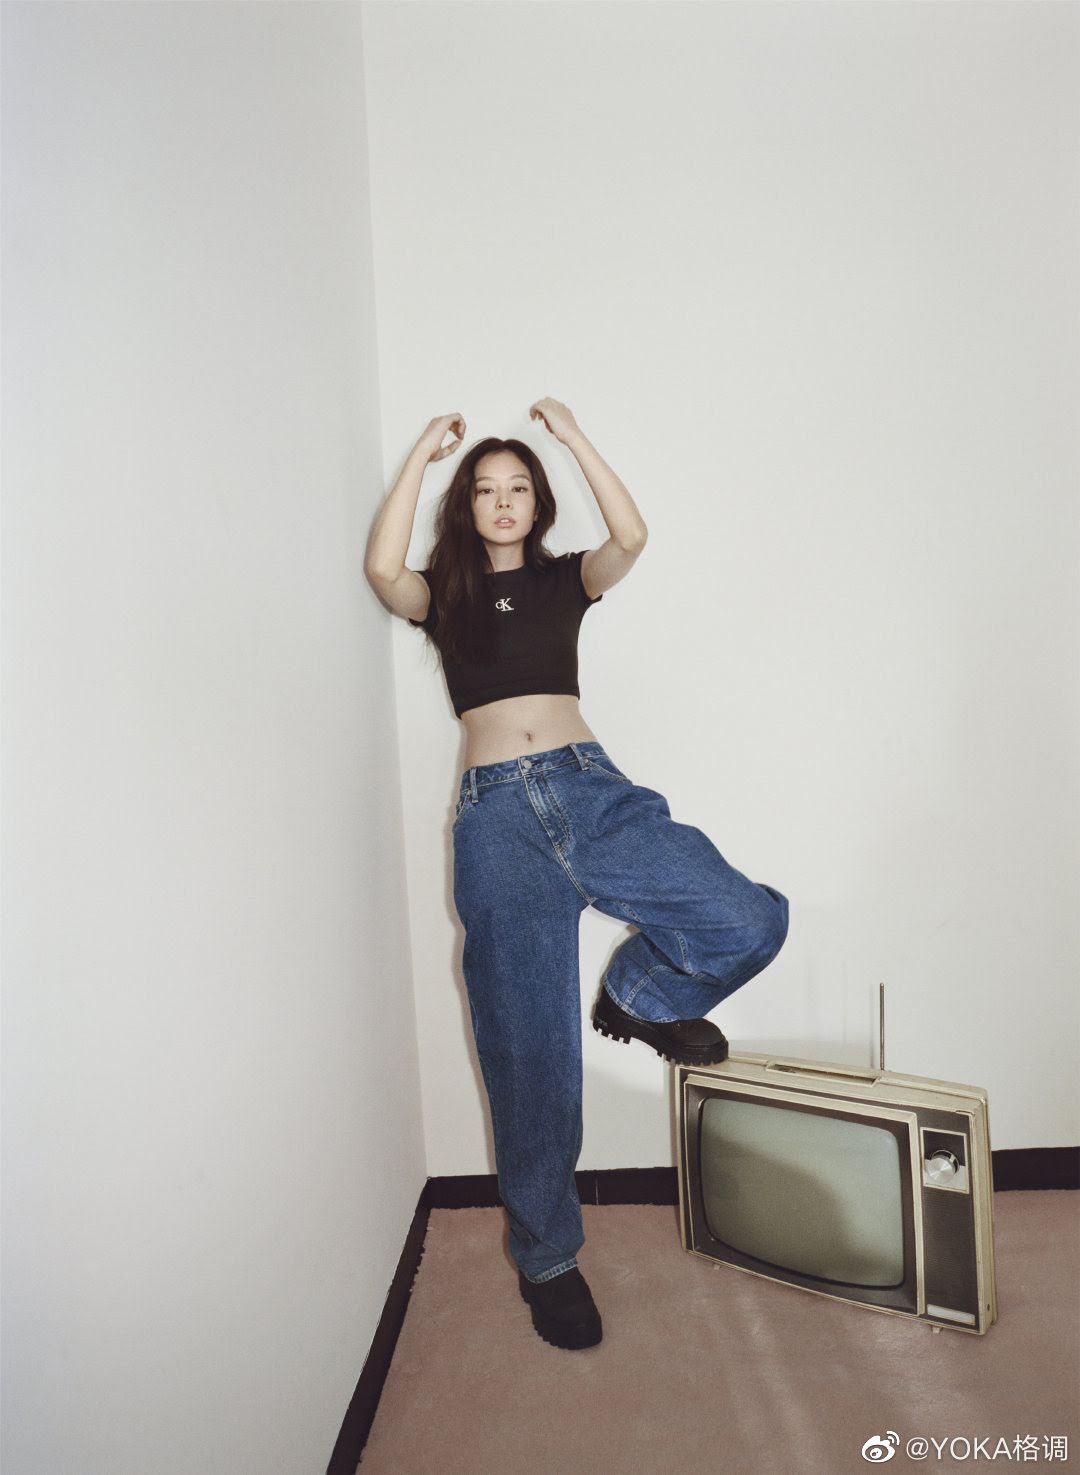 Jennie khoe dáng trong những item nổi bật của CK như quần jeans và áo croptop thể thao.